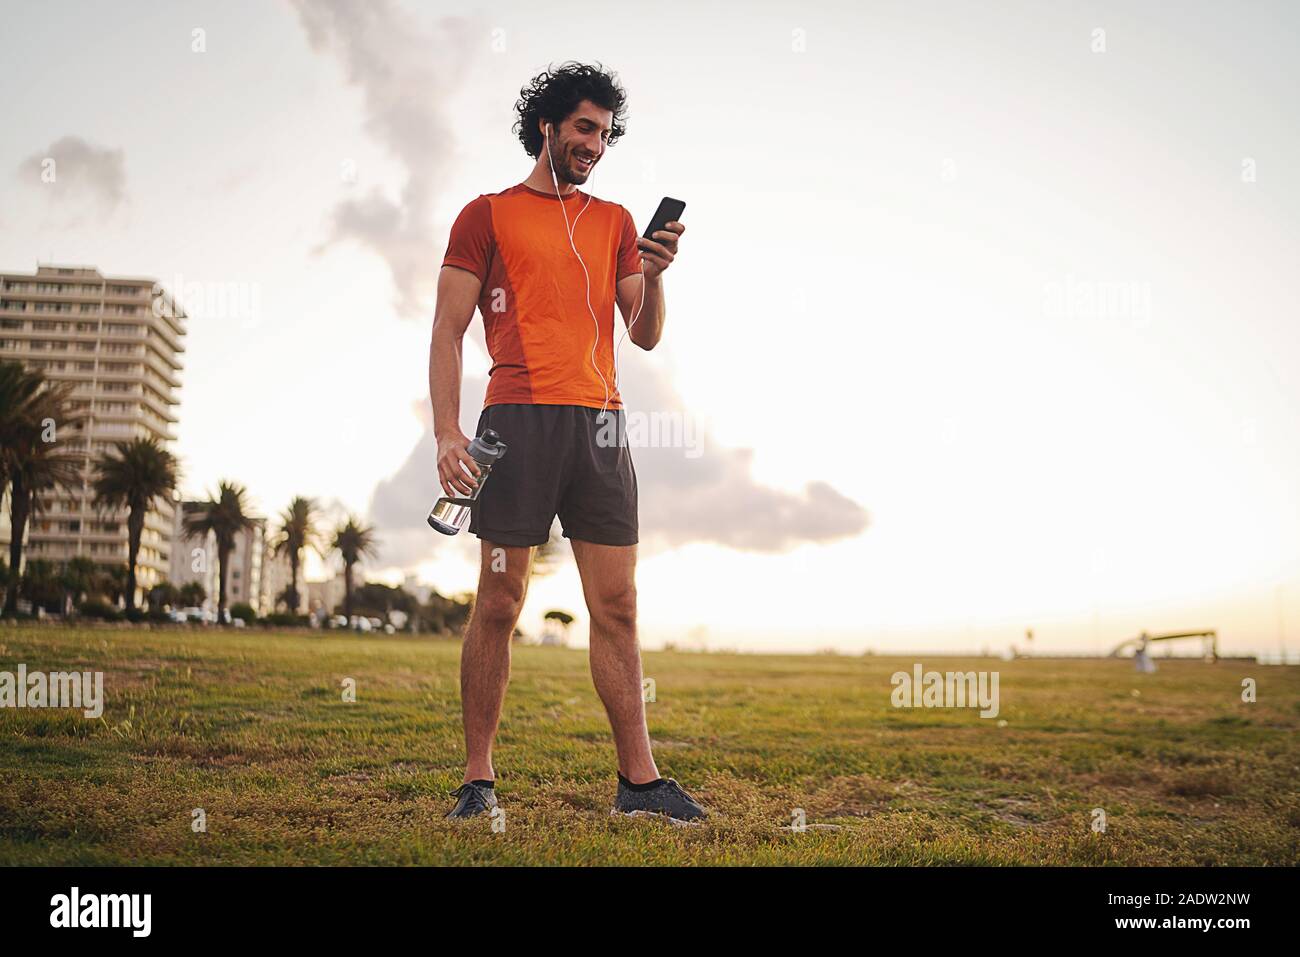 Voller Körper geschossen von einer glücklichen athletischen jungen Mann hält die Flasche in der Hand Musik hören über Kopfhörer mit Smart Phone während im Park stehende Stockfoto